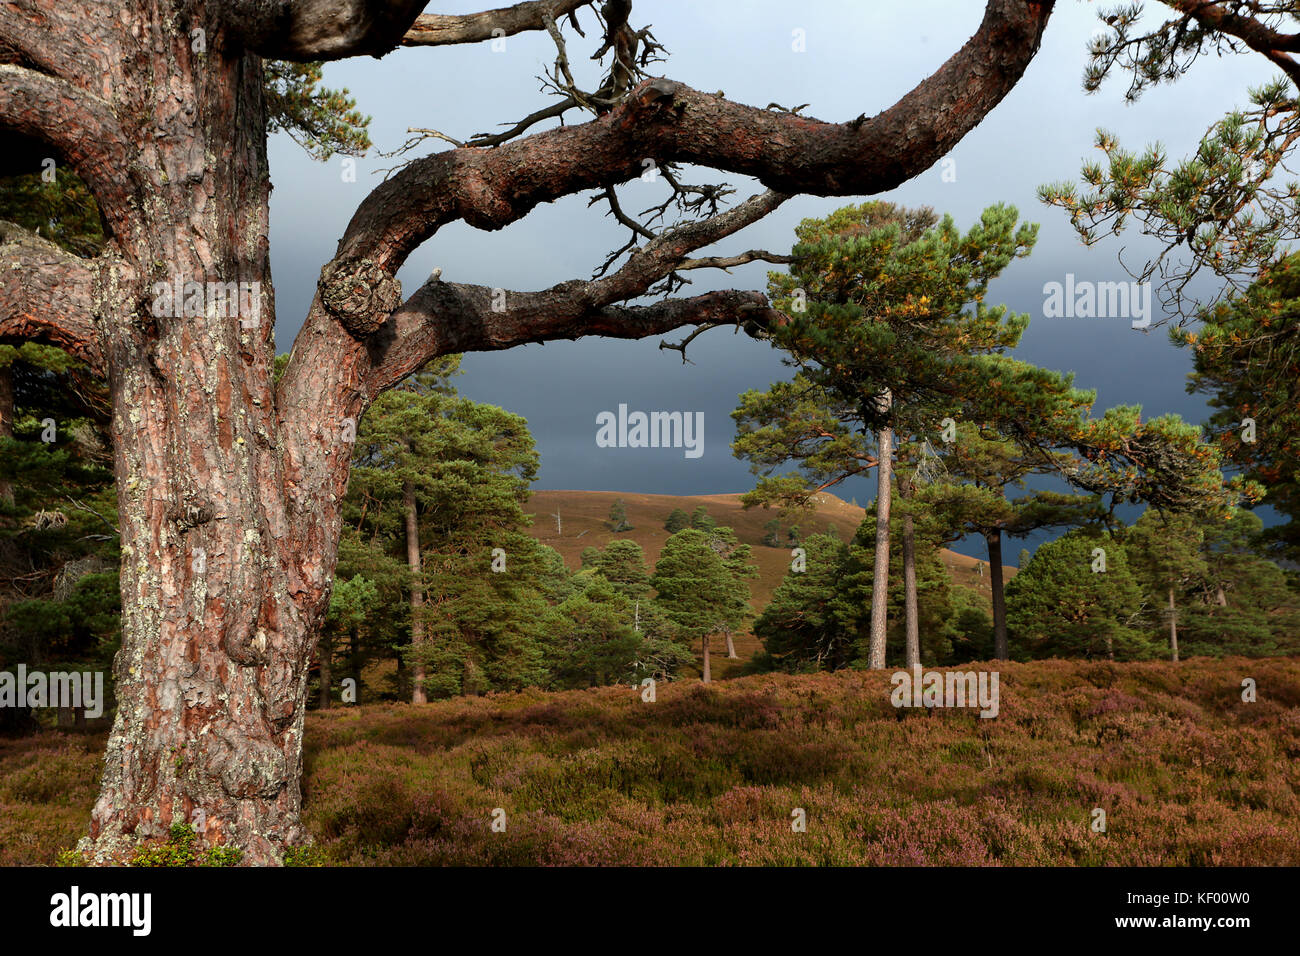 Scots Kiefern, einem nadelwald Baum ist Teil der kaledonischen Wald, im Cairngorms Nationalpark, mar Lodge Estate, braemar, Aberdeenshire, Schottland Stockfoto